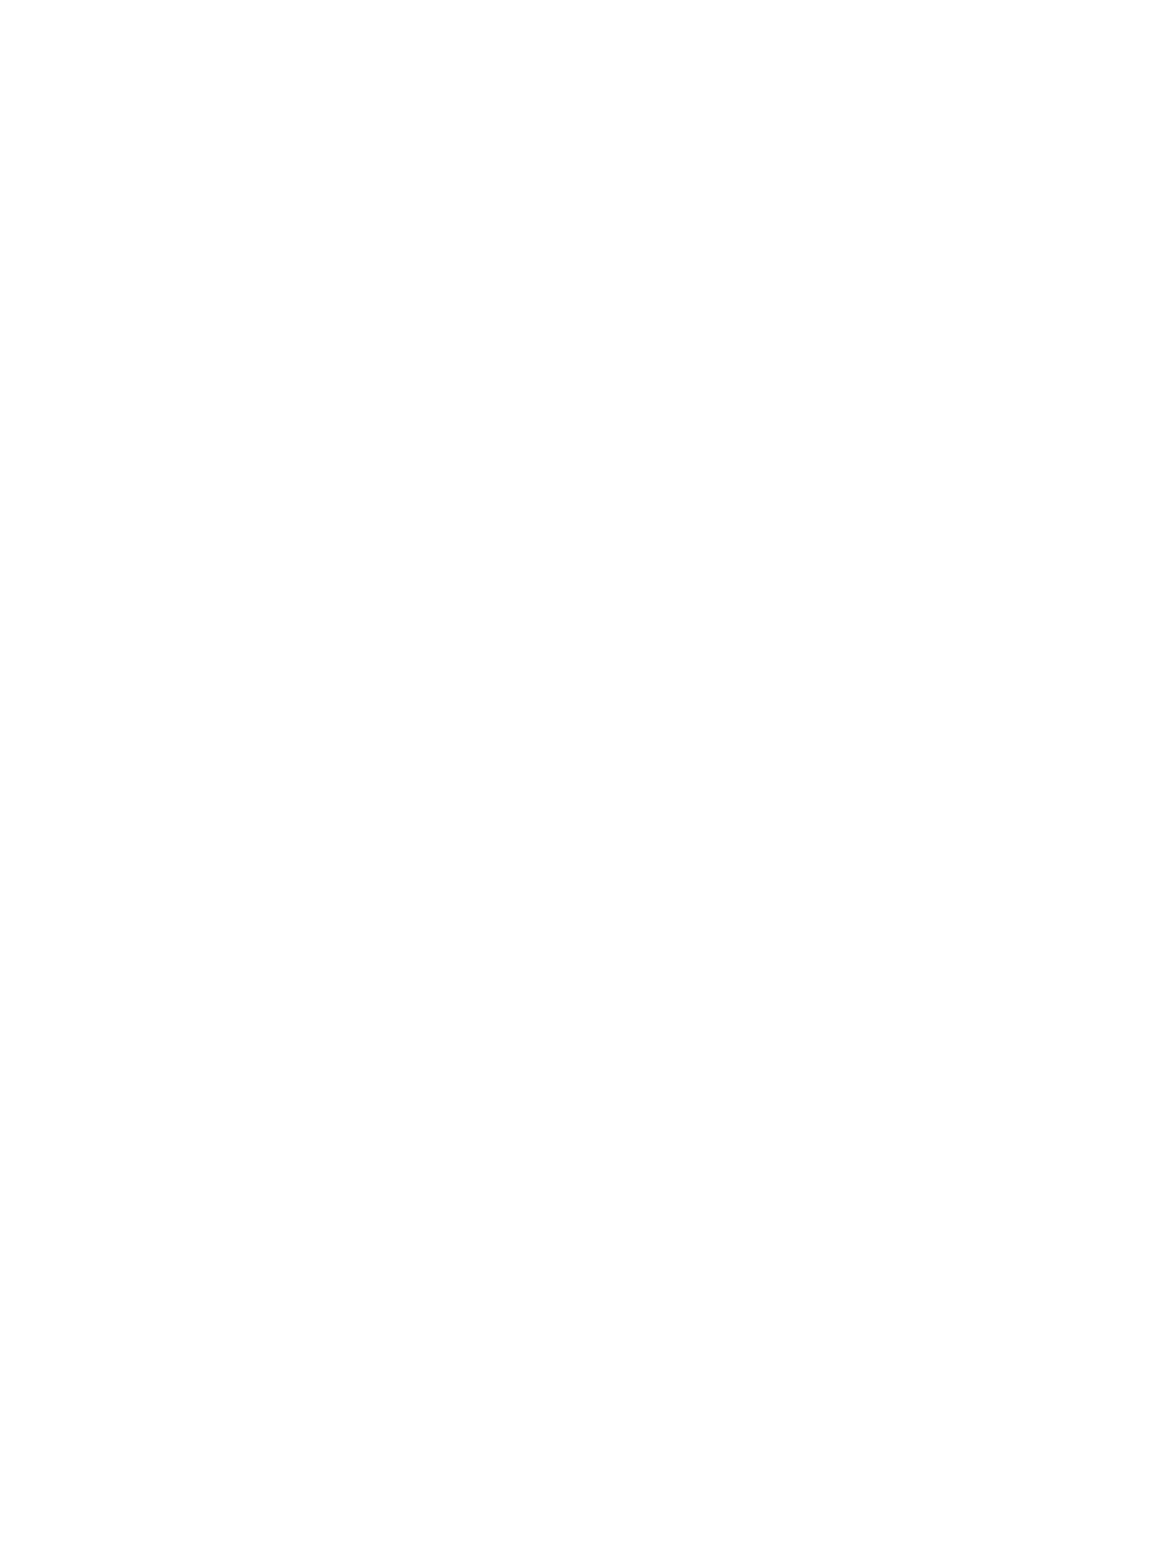 Revenio logo for dark backgrounds (transparent PNG)